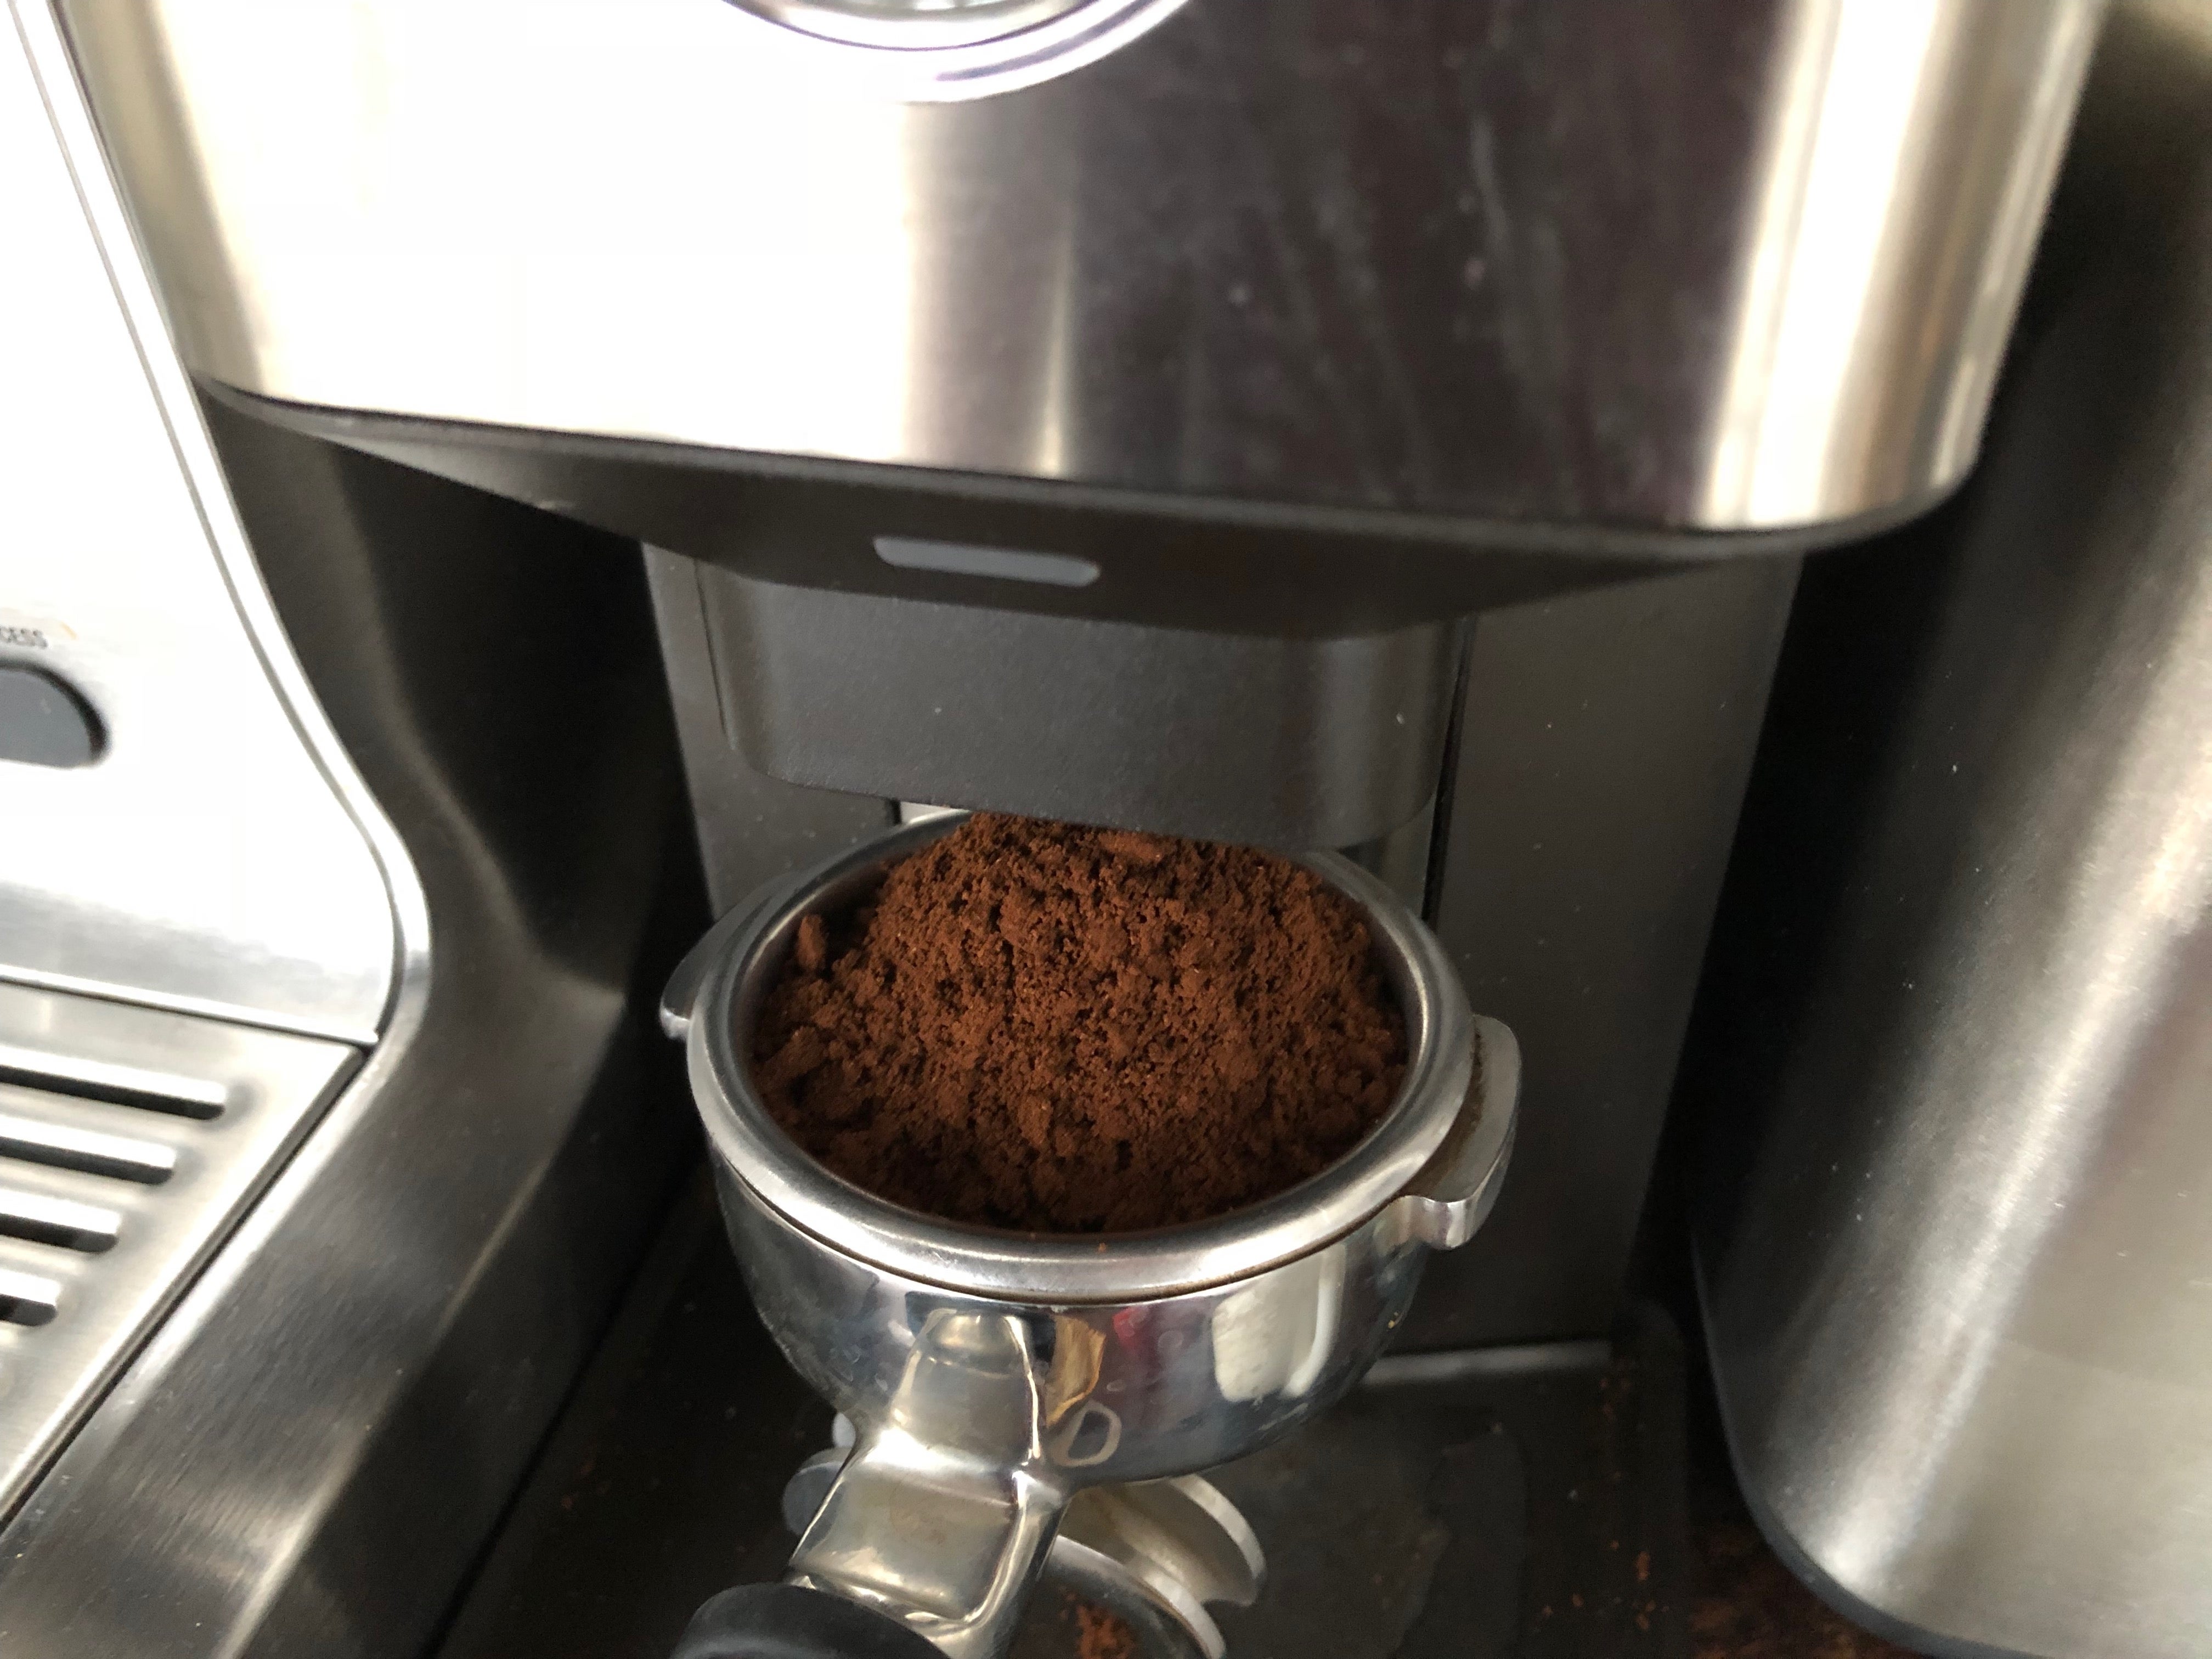 Griding coffee to make espresso